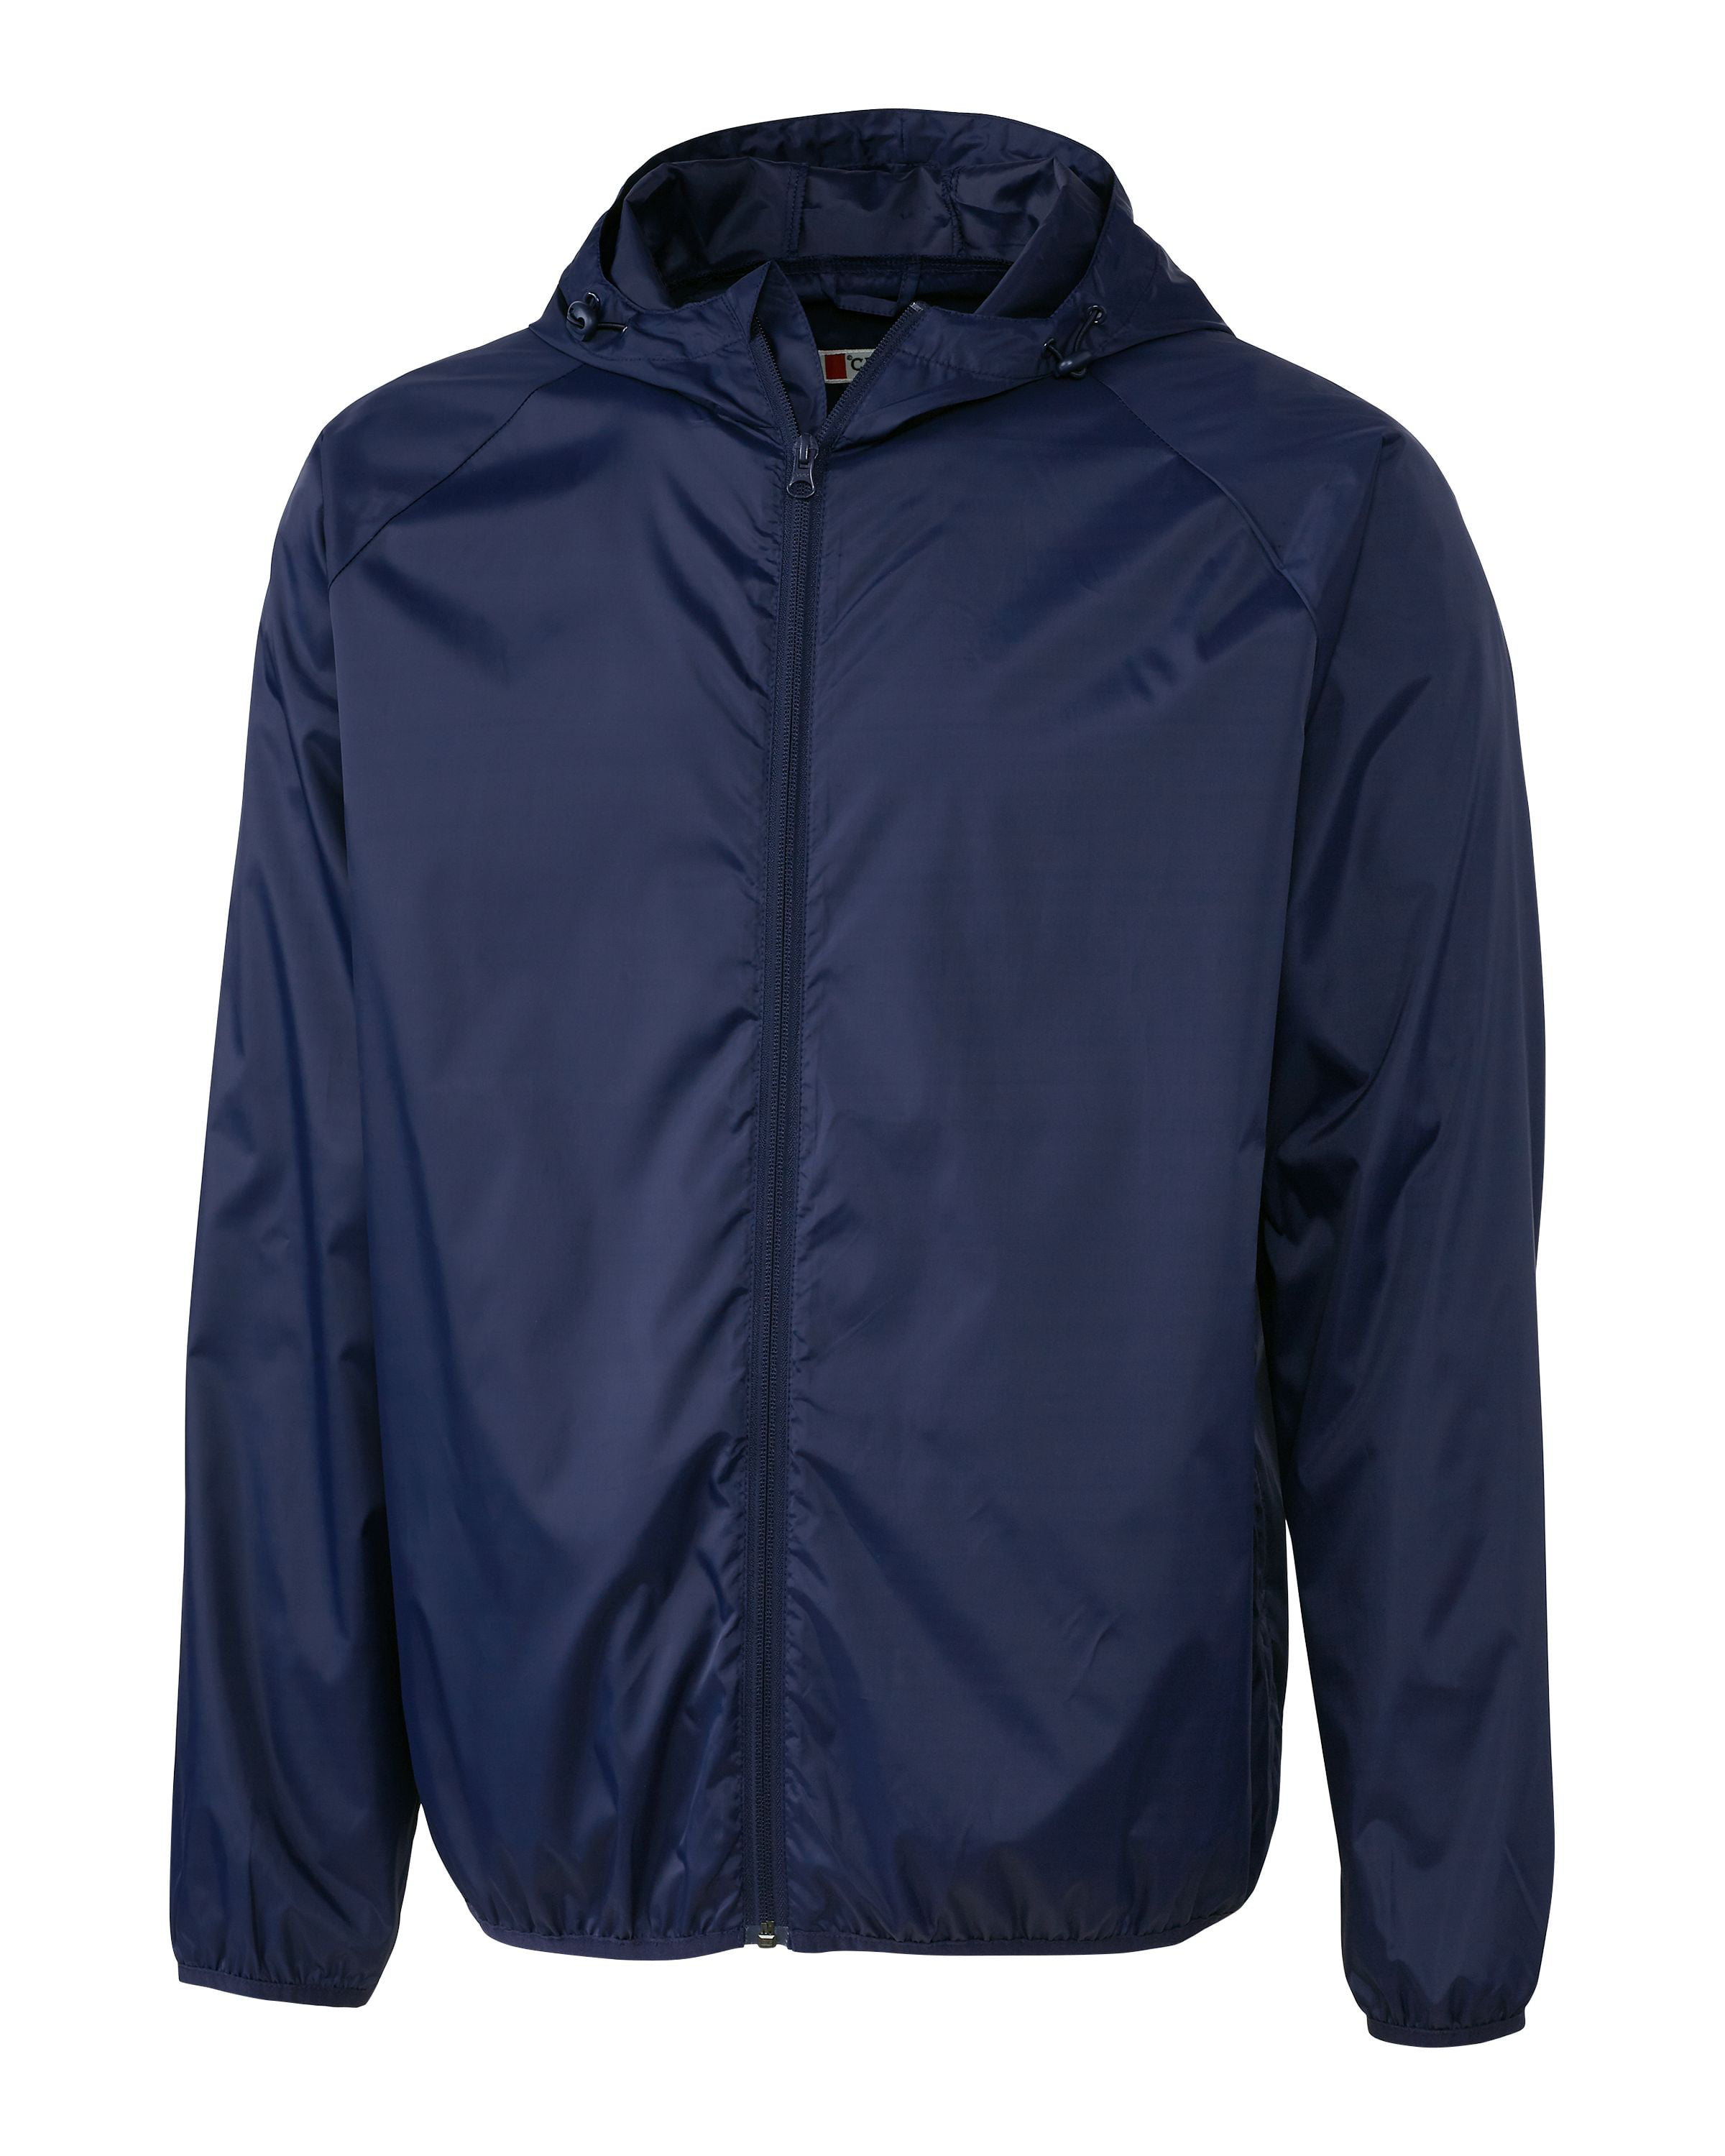 Clique Men's Reliance Water Resistant Packable Full Zip Golf Jacket ...